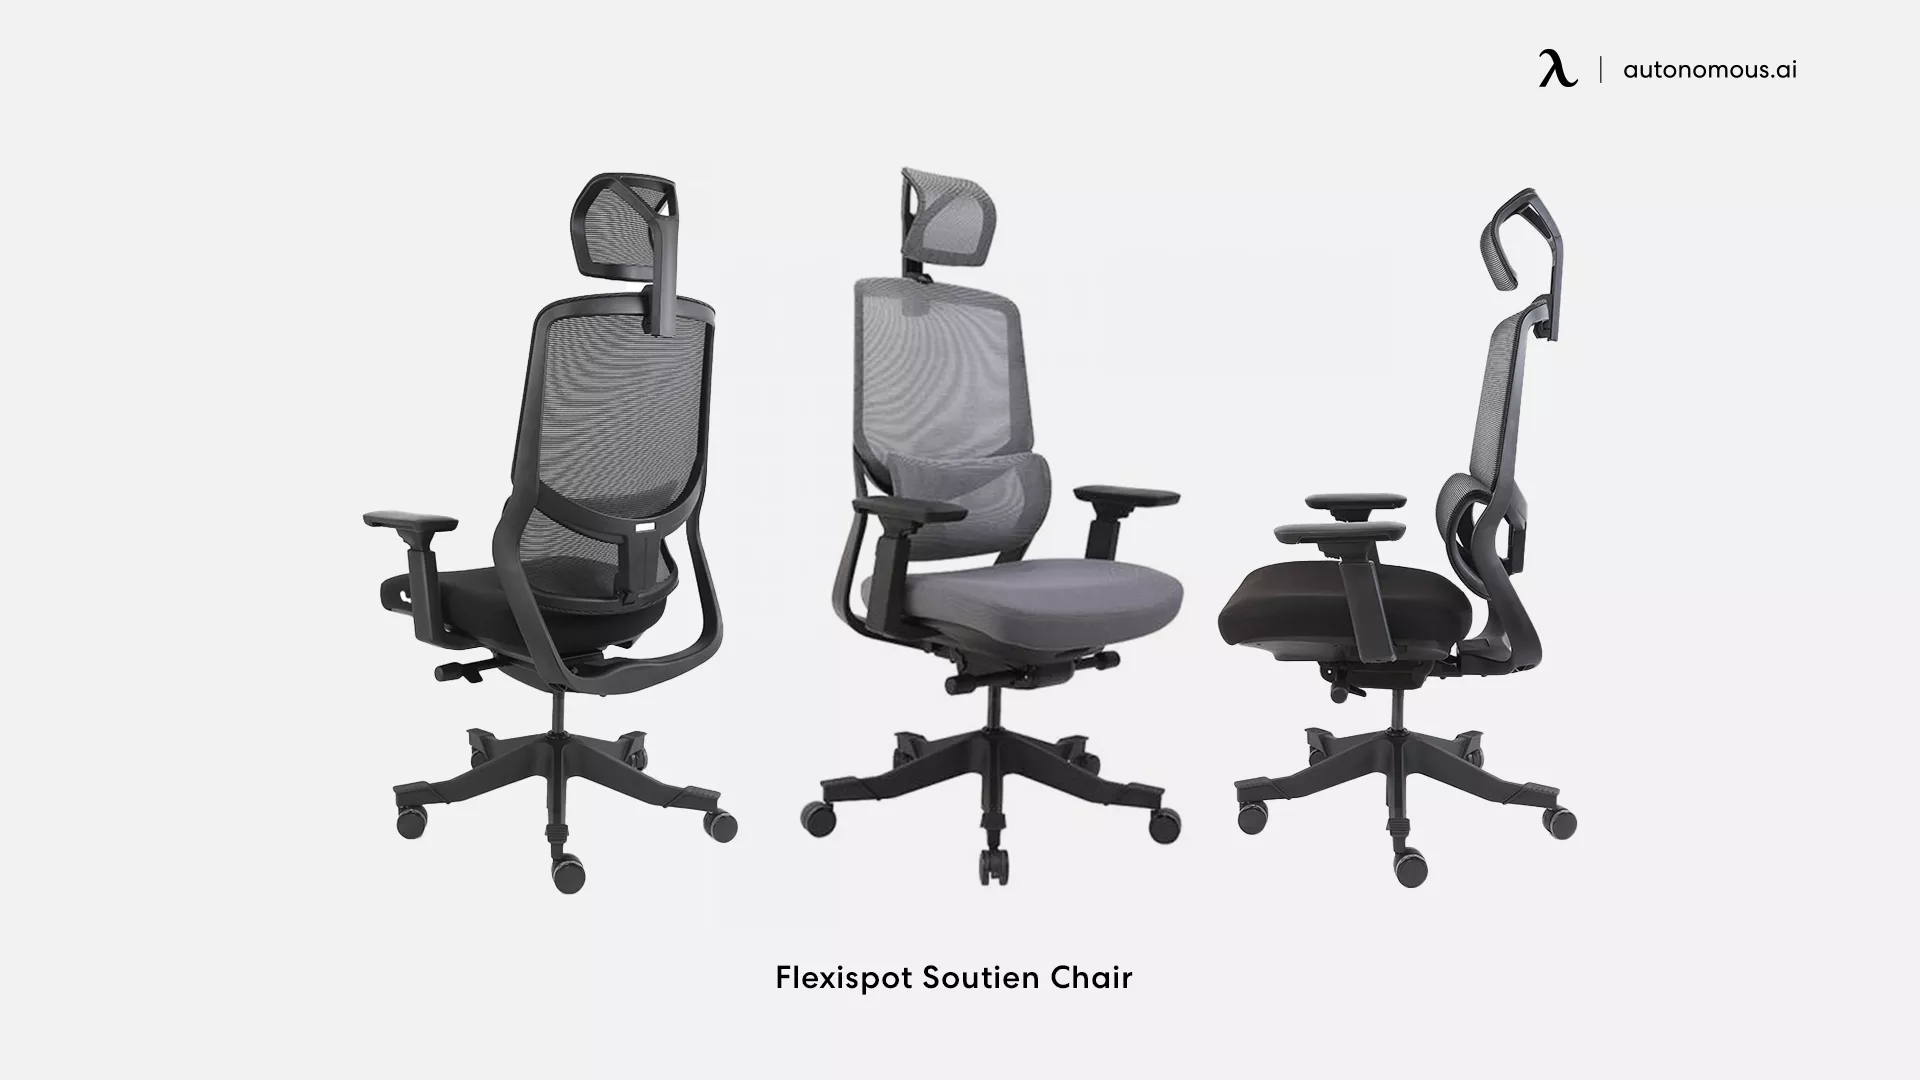 Flexispot Soutien Chair